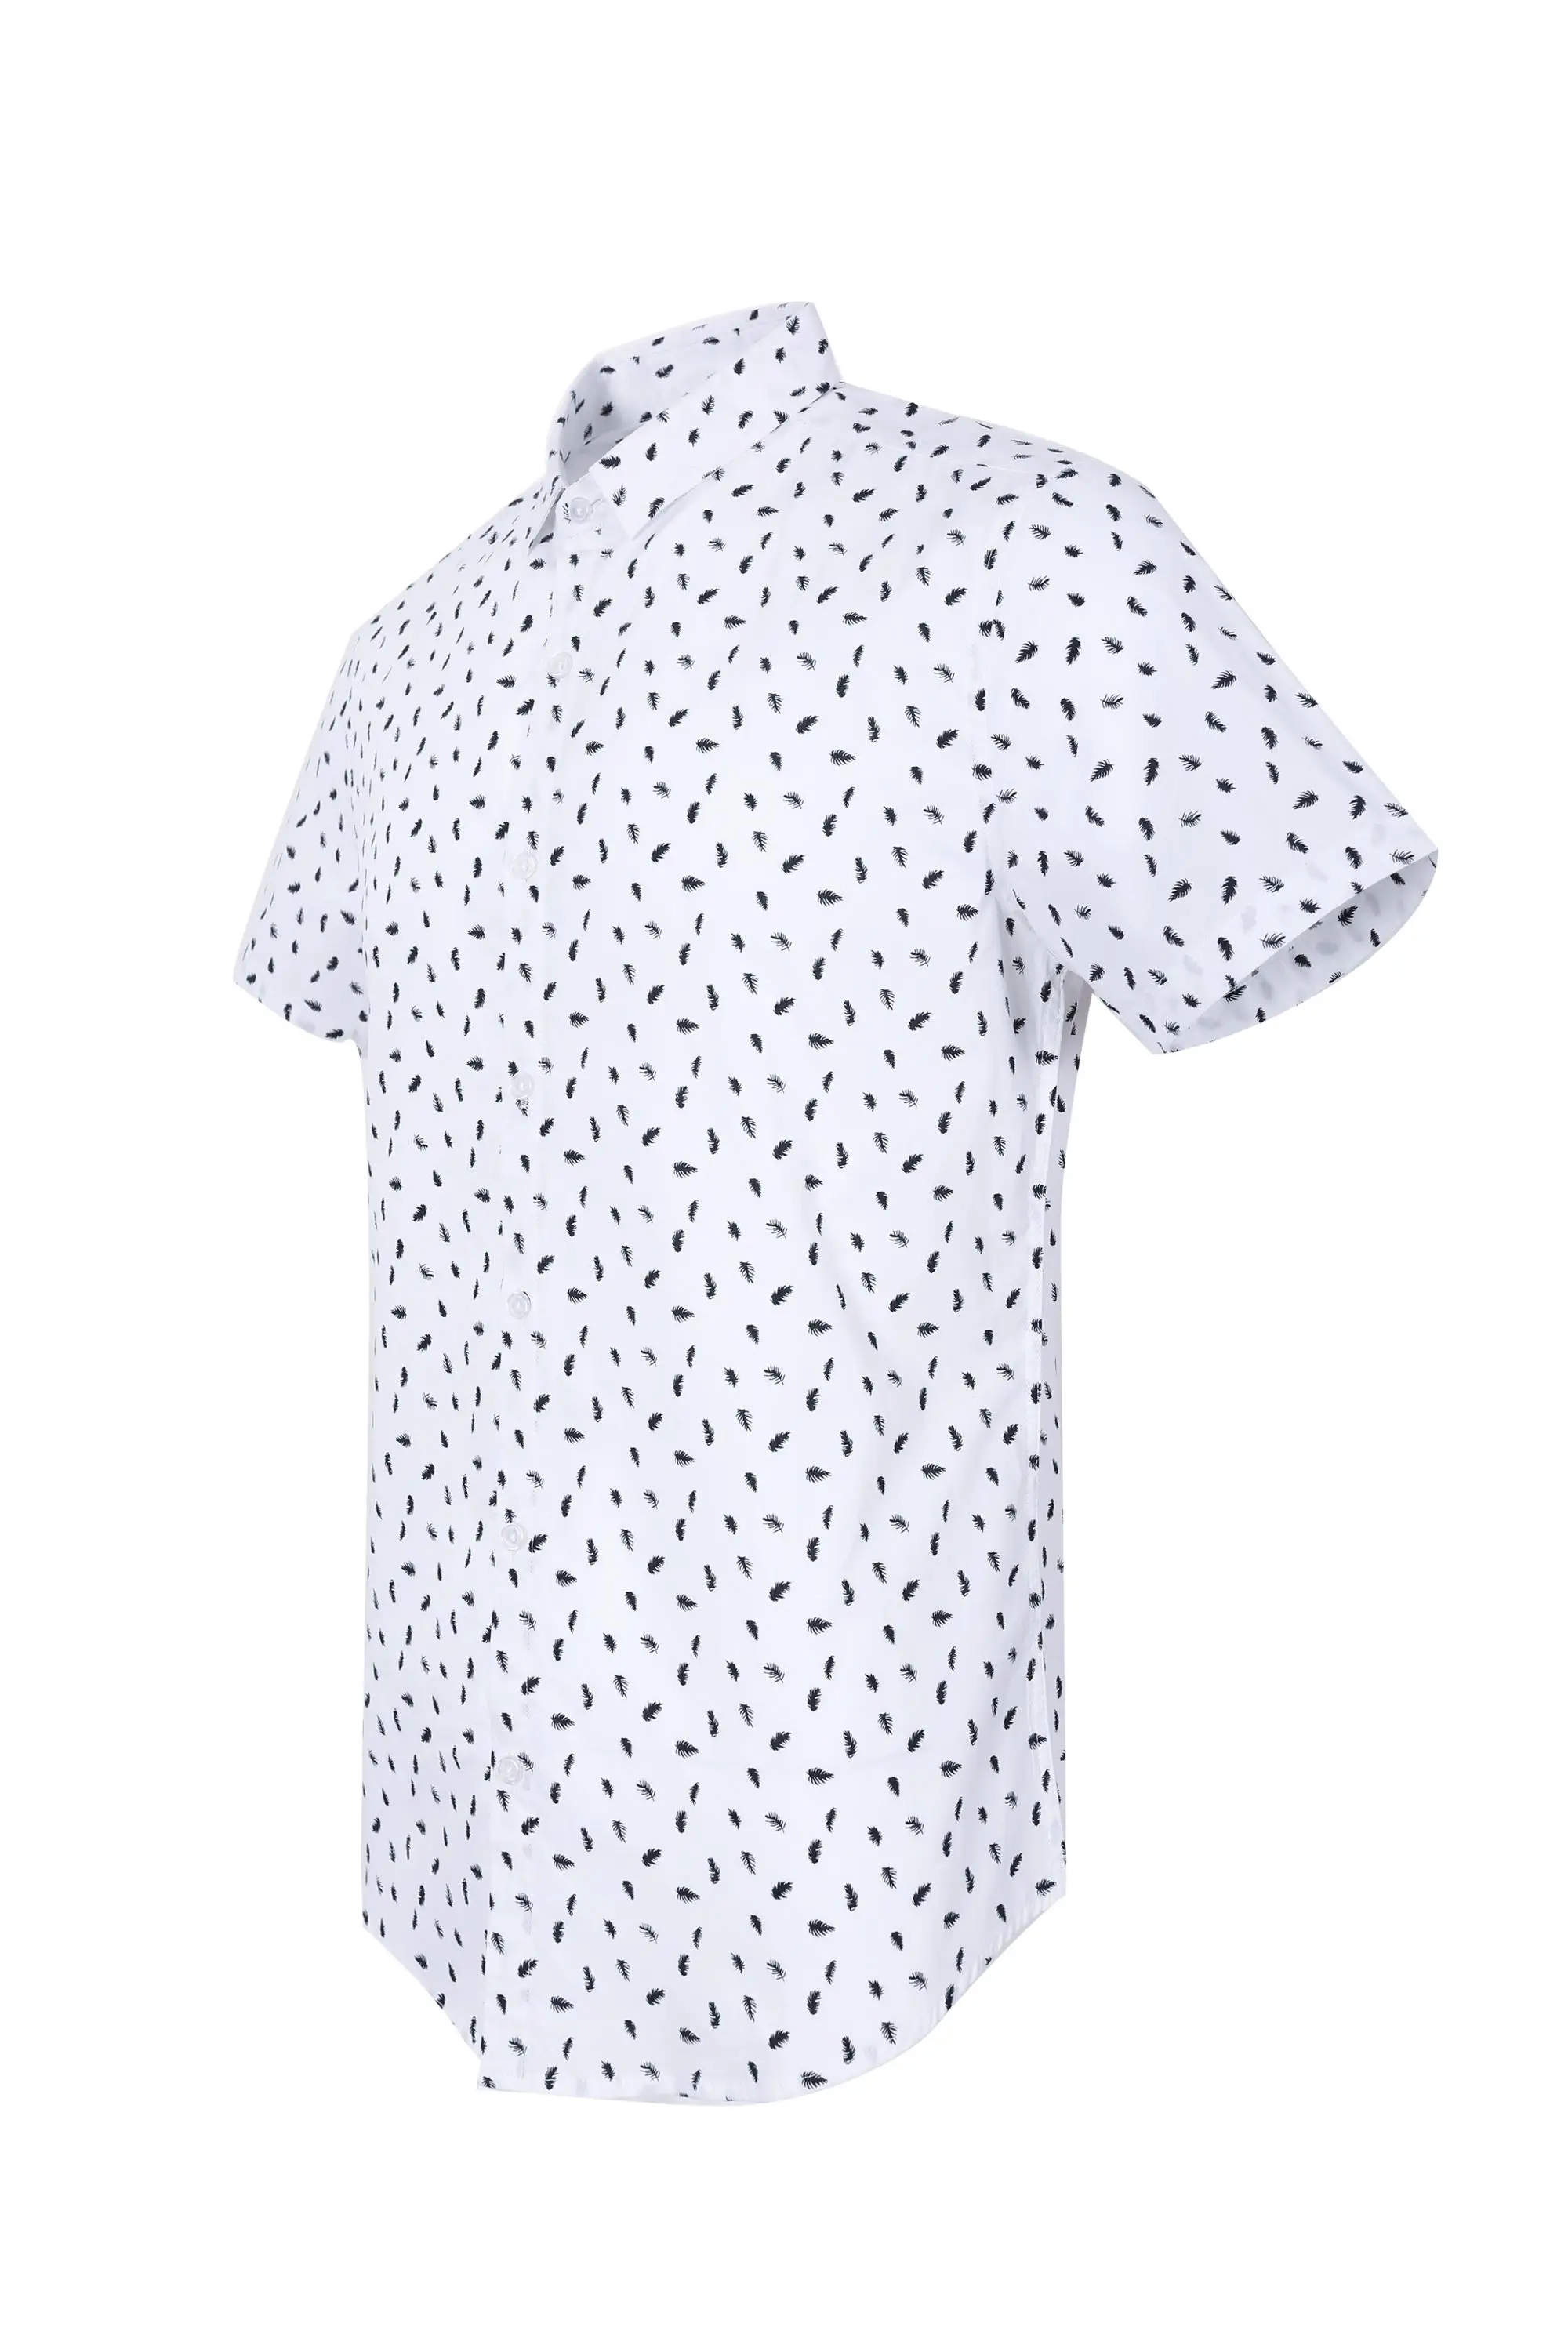 Manufaktur T Shirt Putih Kemeja T Shirt Harga Mesin Cetak 3d Polo